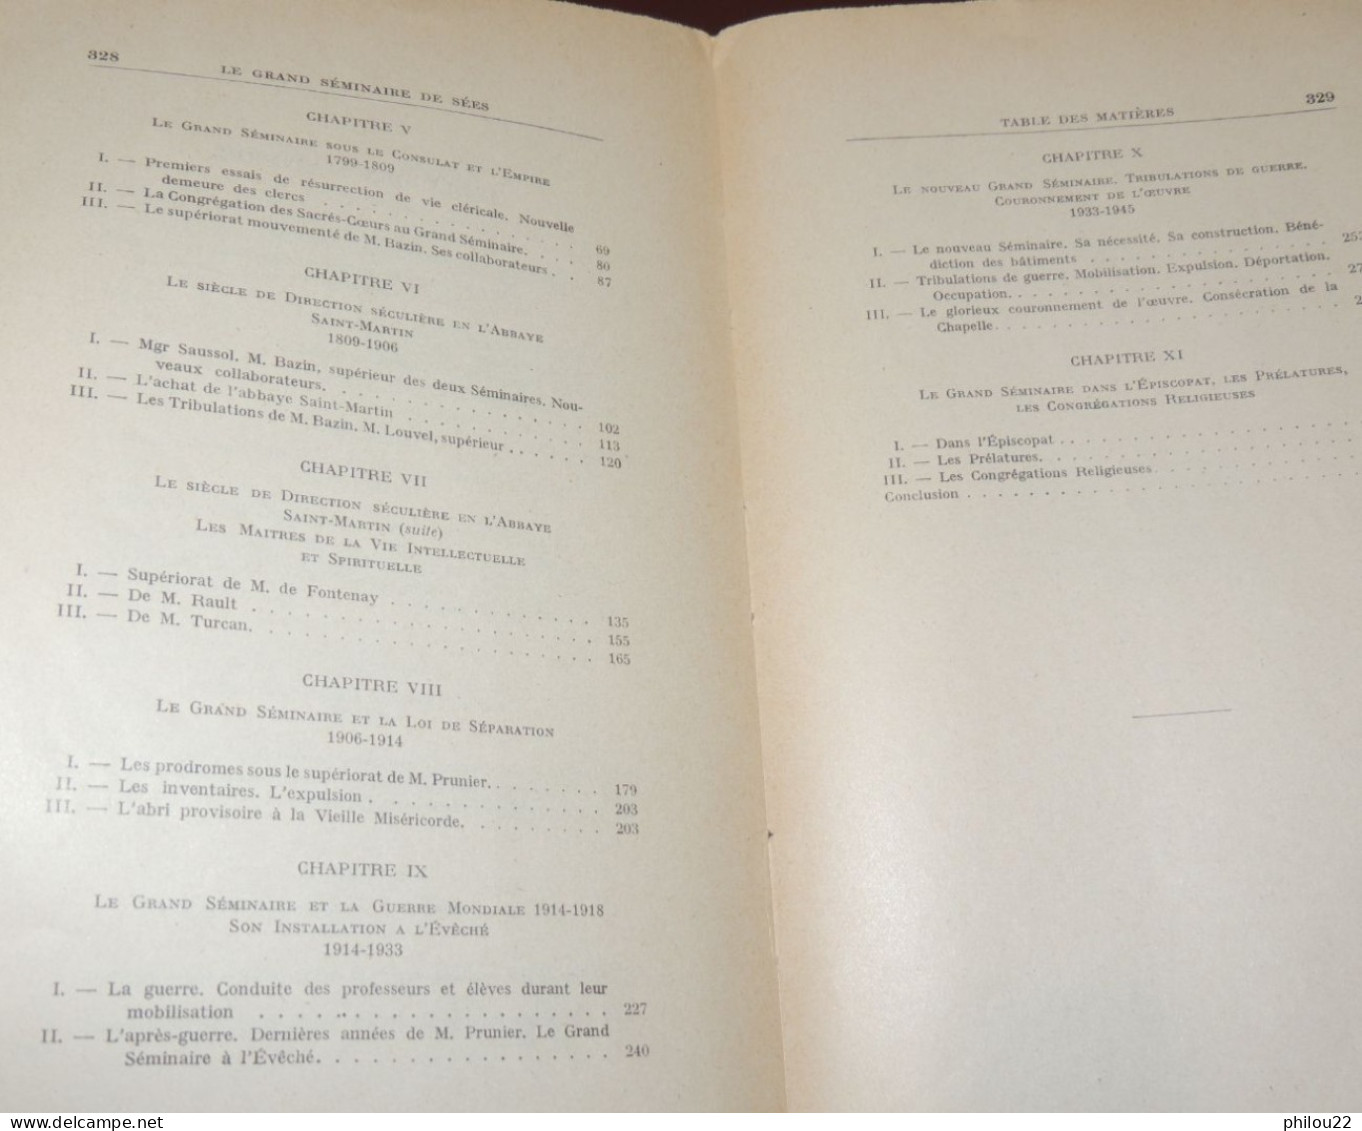 ORNE  NORMANDIE  Abbé TABOURIER - Le Grand Séminaire De Sées  1953  Envoi - Non Classificati